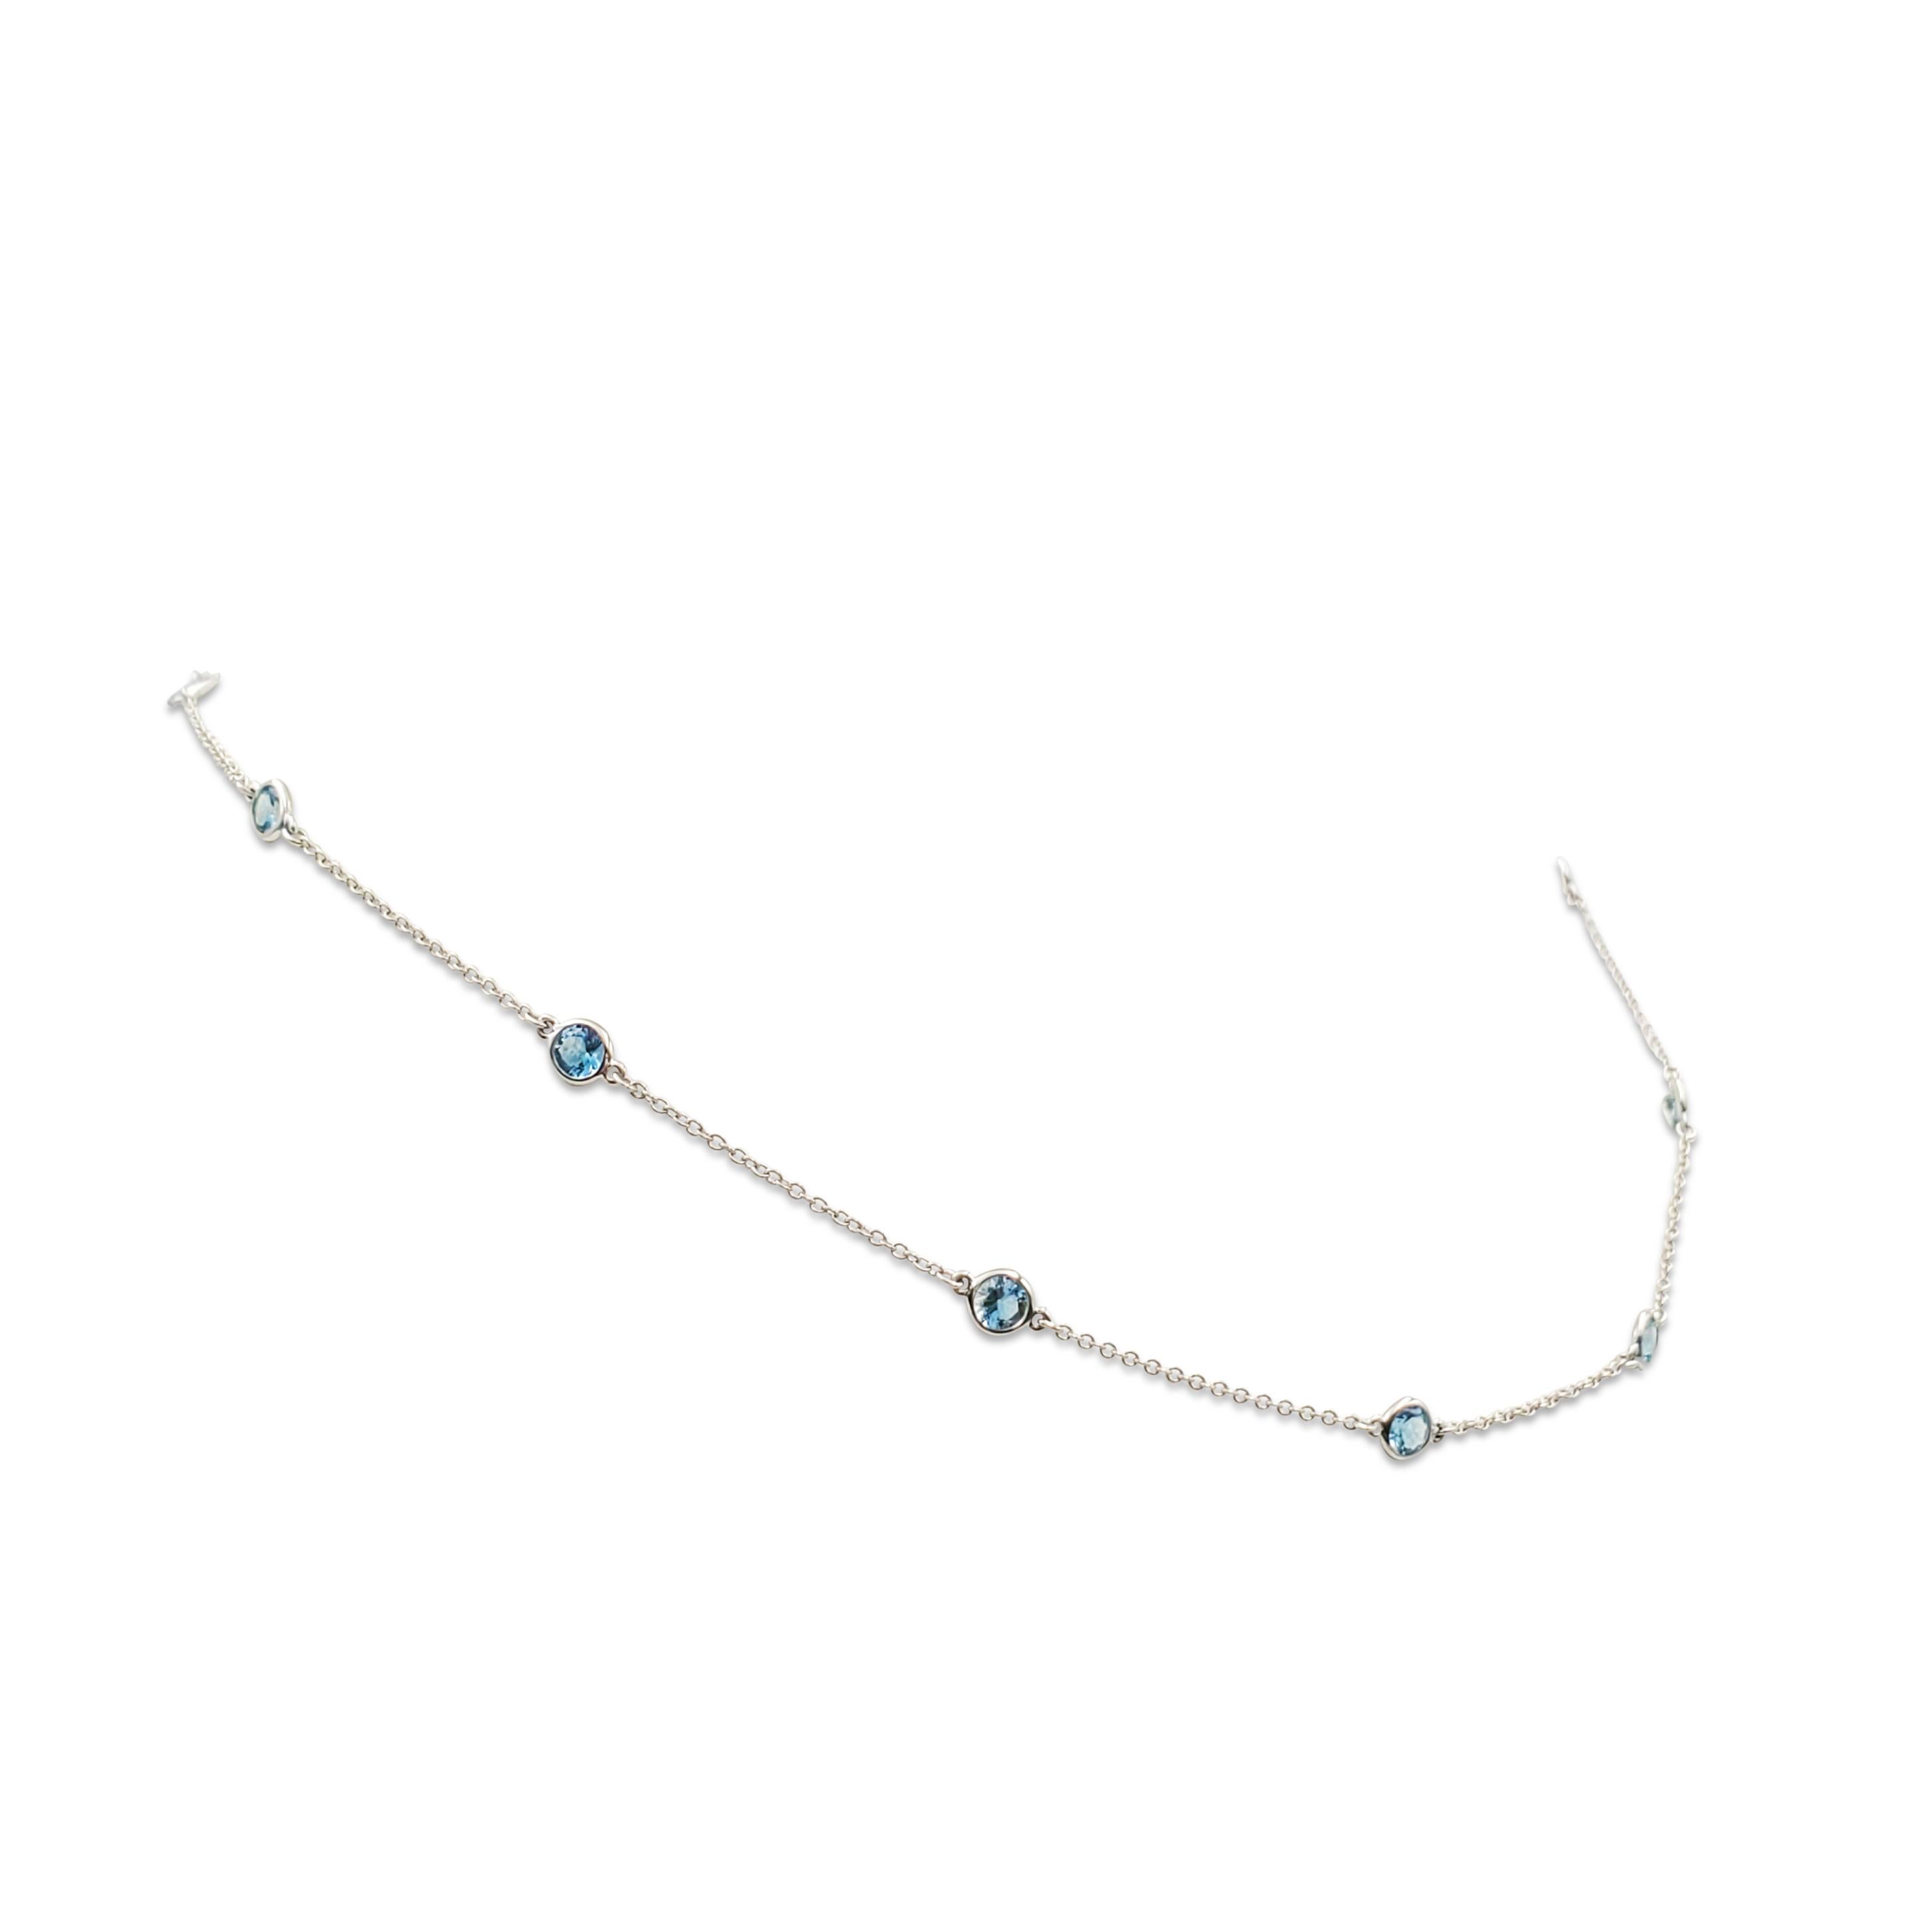 Authentique Elsa Peretti pour Tiffany & Co. Collier Color by the Yard en platine.  Le délicat collier de 16 pouces est serti de 11 aigue-marines de taille ronde et mesure 15 3/4 pouces de long.  Signé Tiffany & Co., Peretti, PT950.  Le collier est